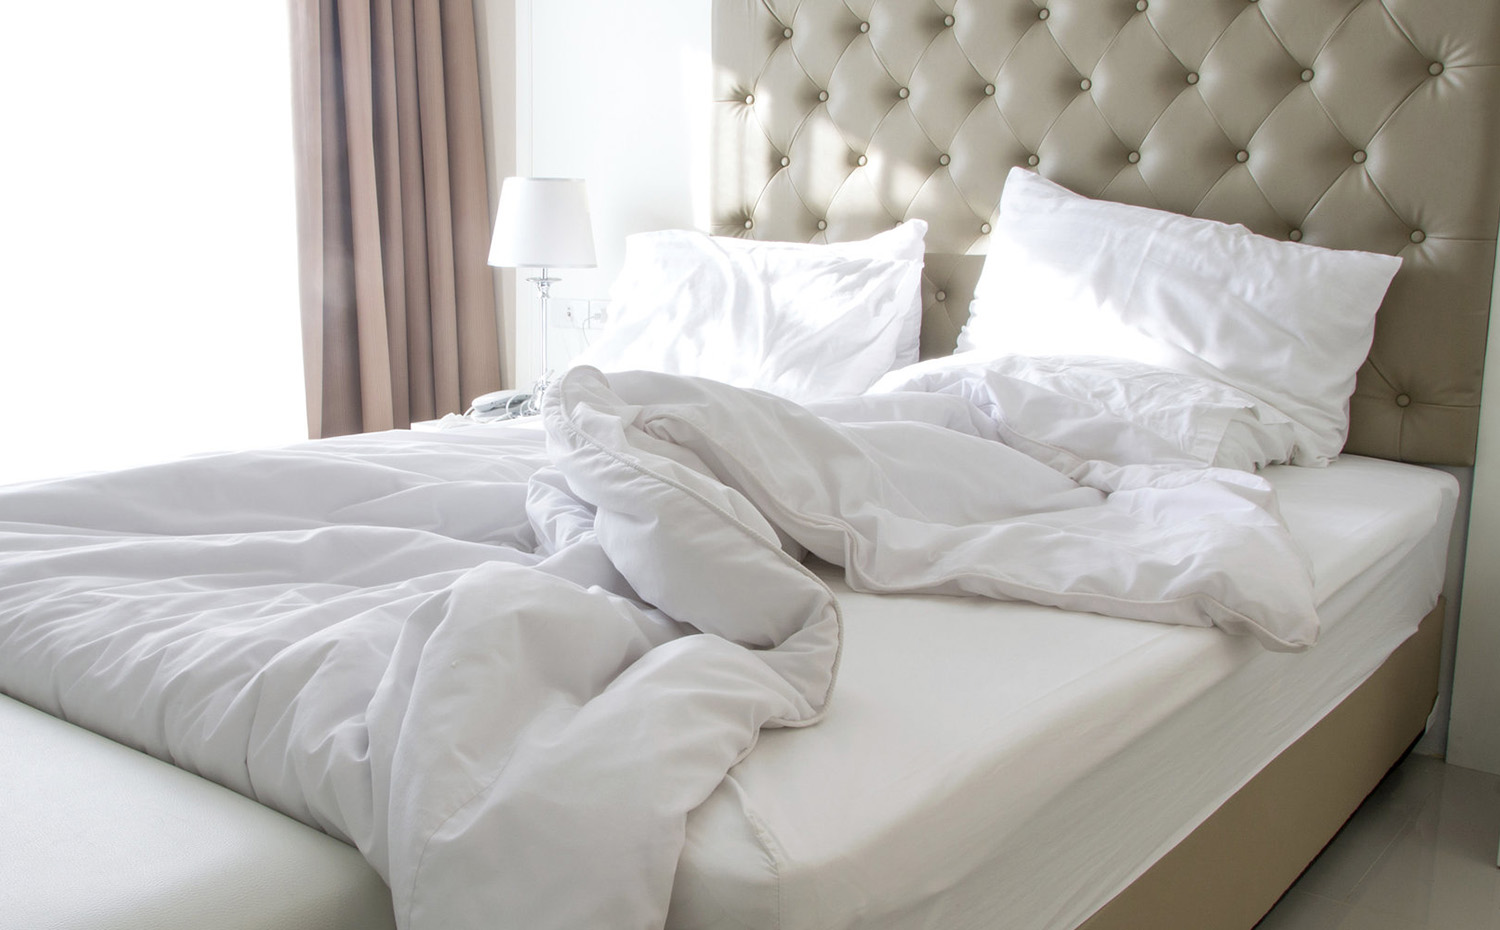 cama desecha. Según un estudio de la universidad británica de Kingston, no hacer la cama inmediatamente después de levantarnos impediría la proliferación de ácaros ya que de este modo se reducirían los niveles de humedad entre las sábanas